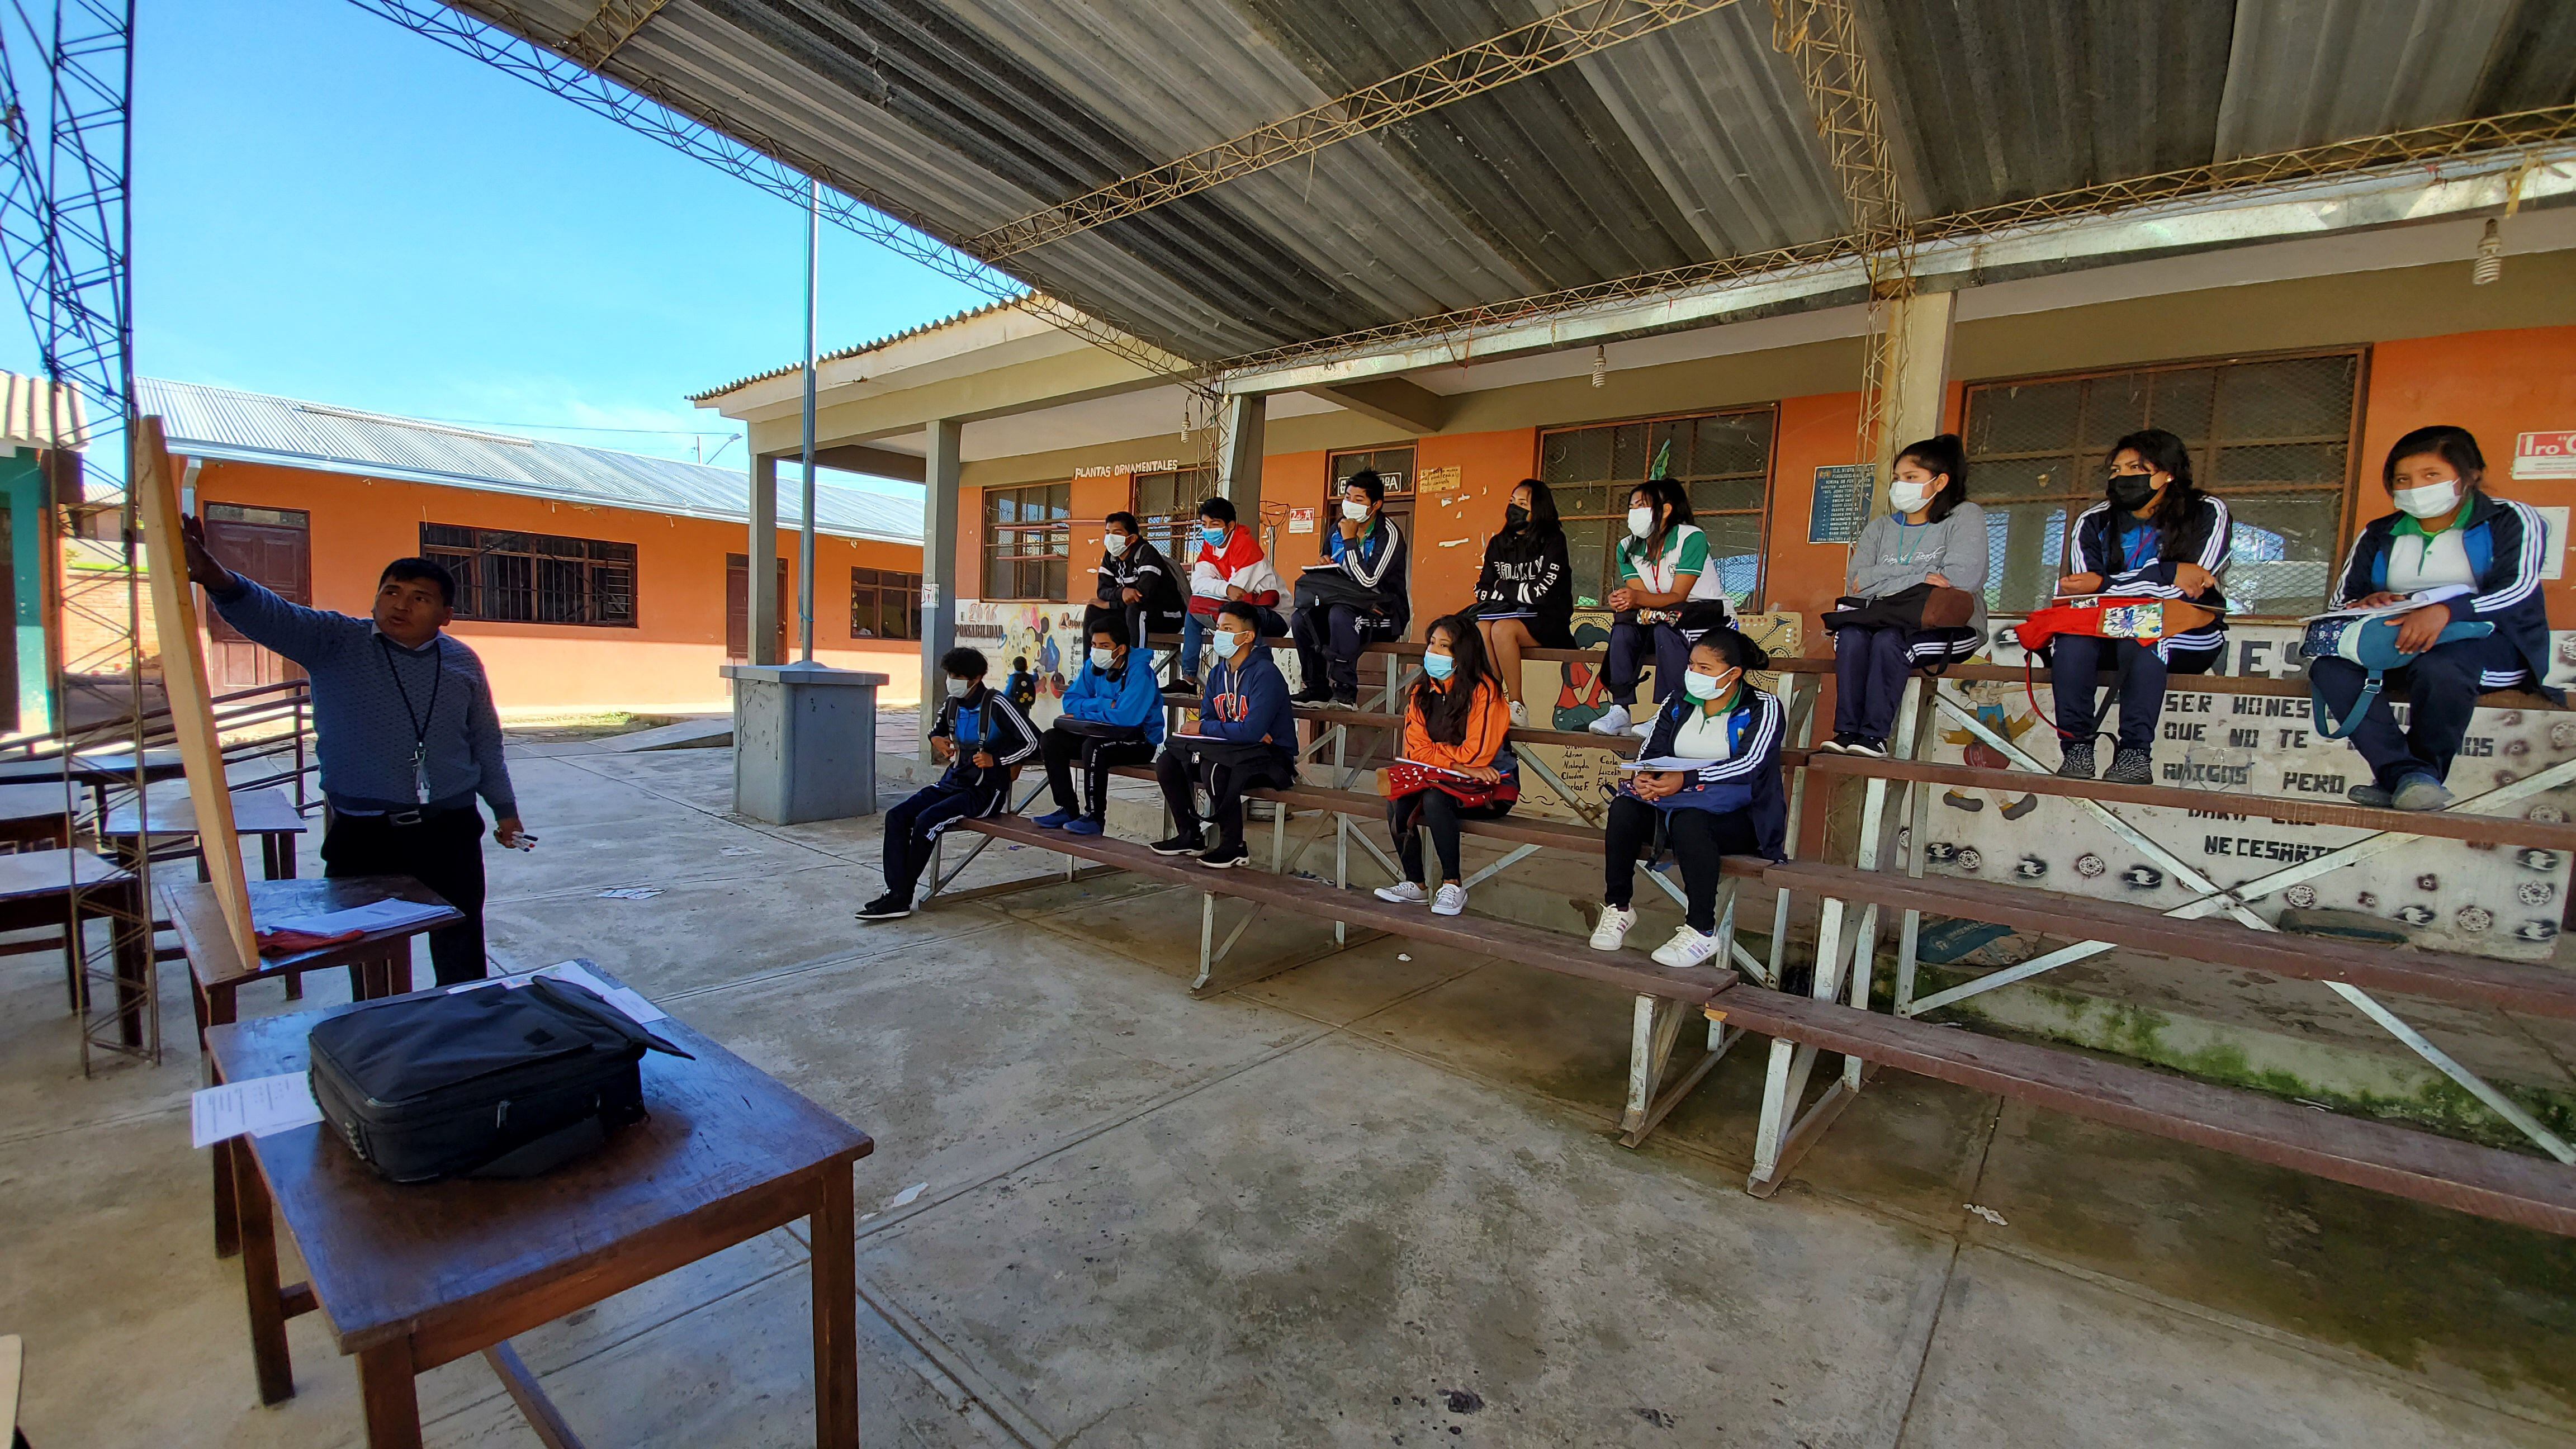 Estudiantes de secundaria del colegio Nueva Veracruz, en Cochabamba, Bolivia, asisten a una clase en el patio debido a que su aula aún no se encuentra habilitada.